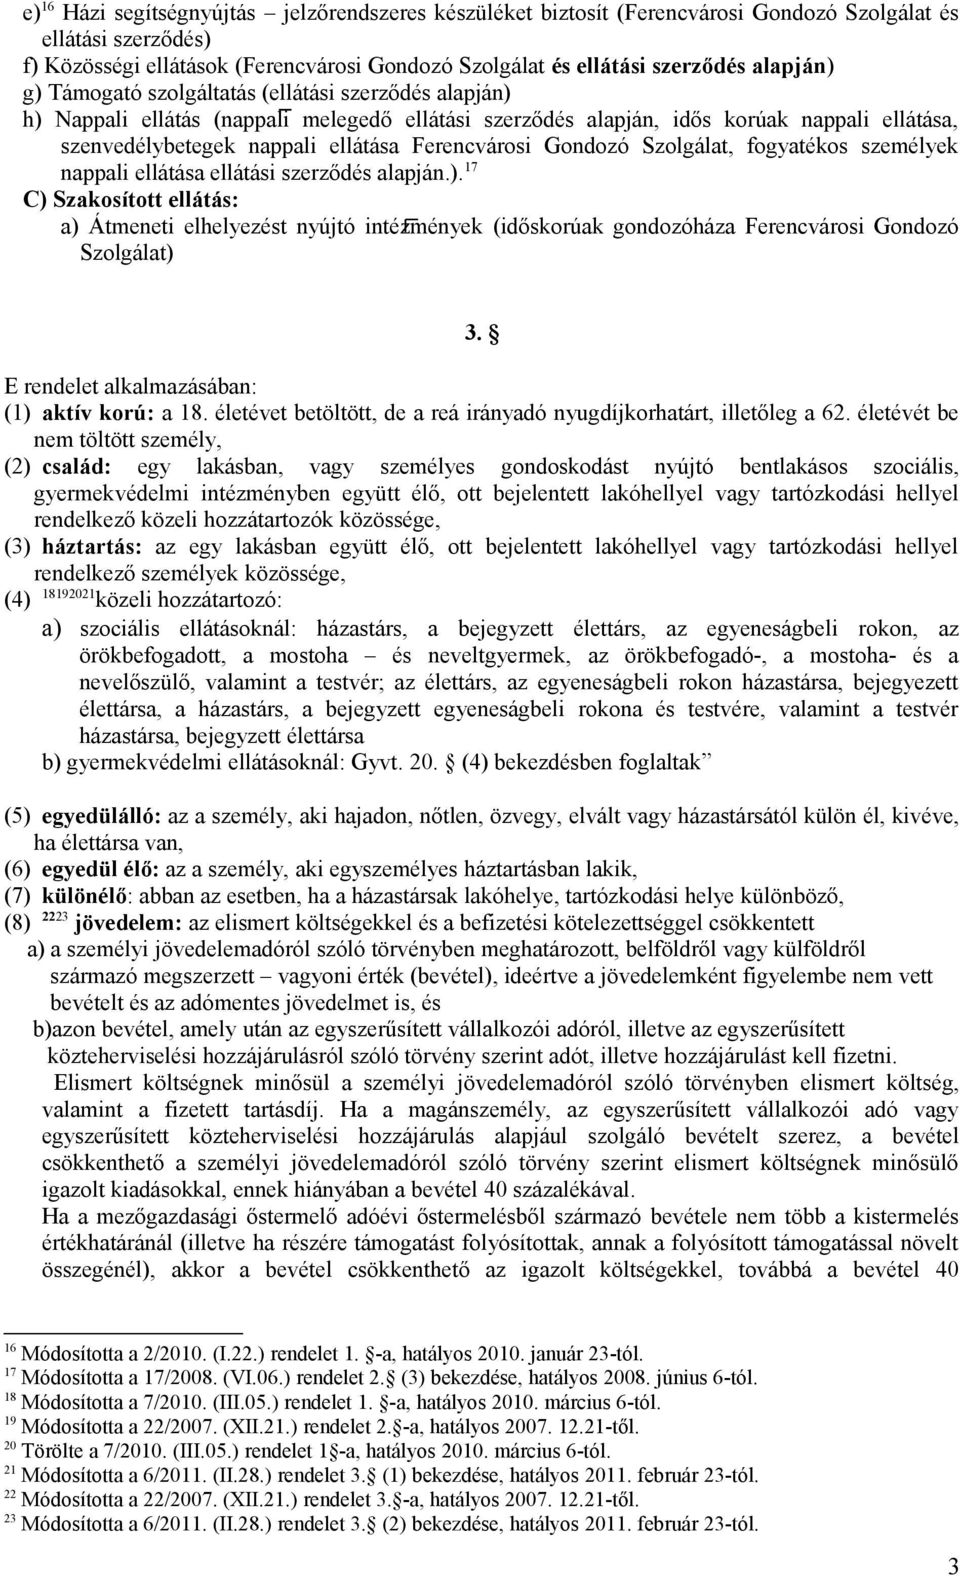 Ferencvárosi Gondozó Szolgálat, fogyatékos személyek nappali ellátása ellátási szerződés alapján.).